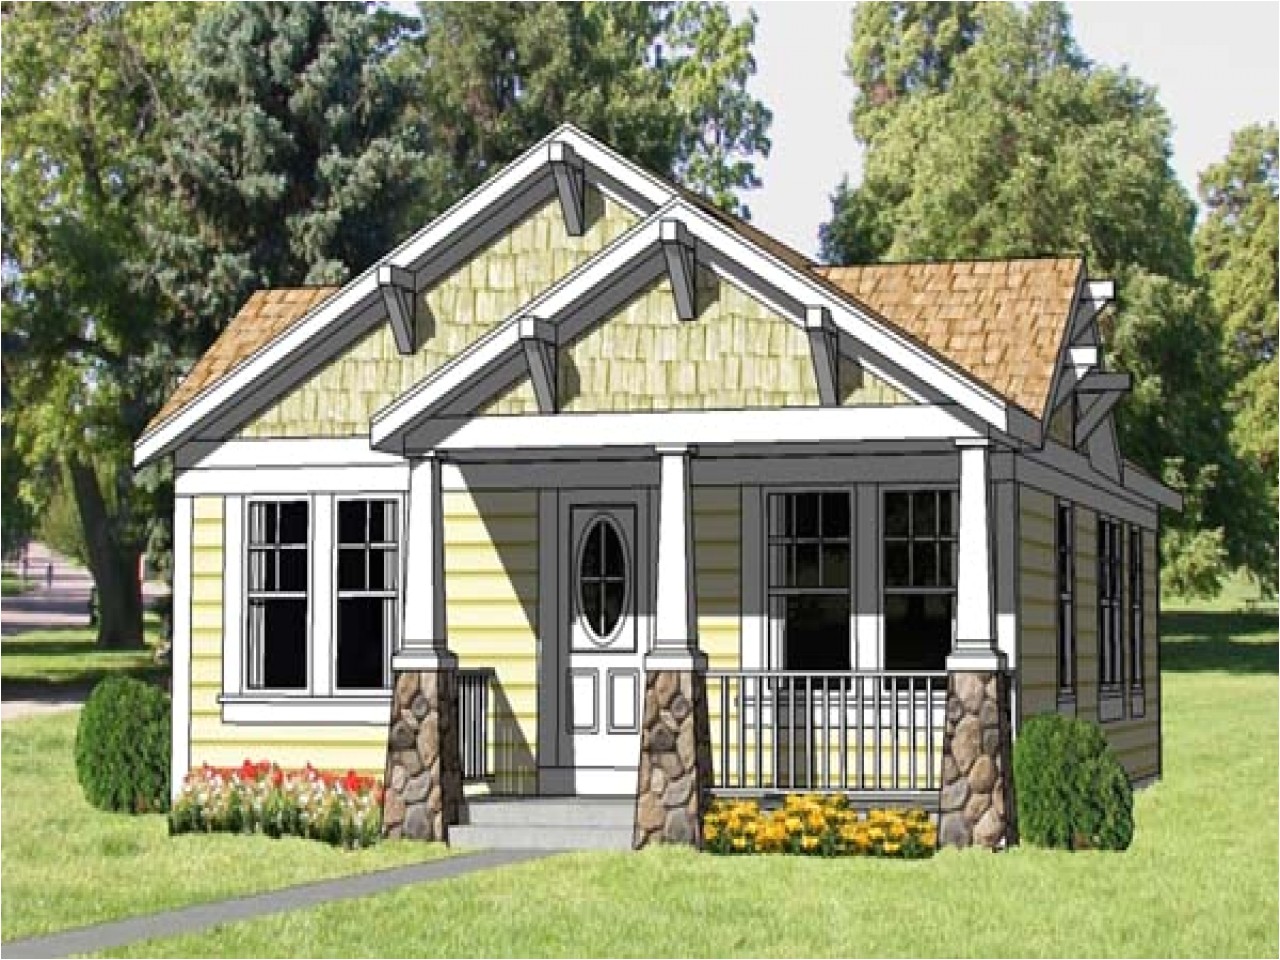 75e81e755c1f52e2 urban craftsman style home small craftsman style home plans